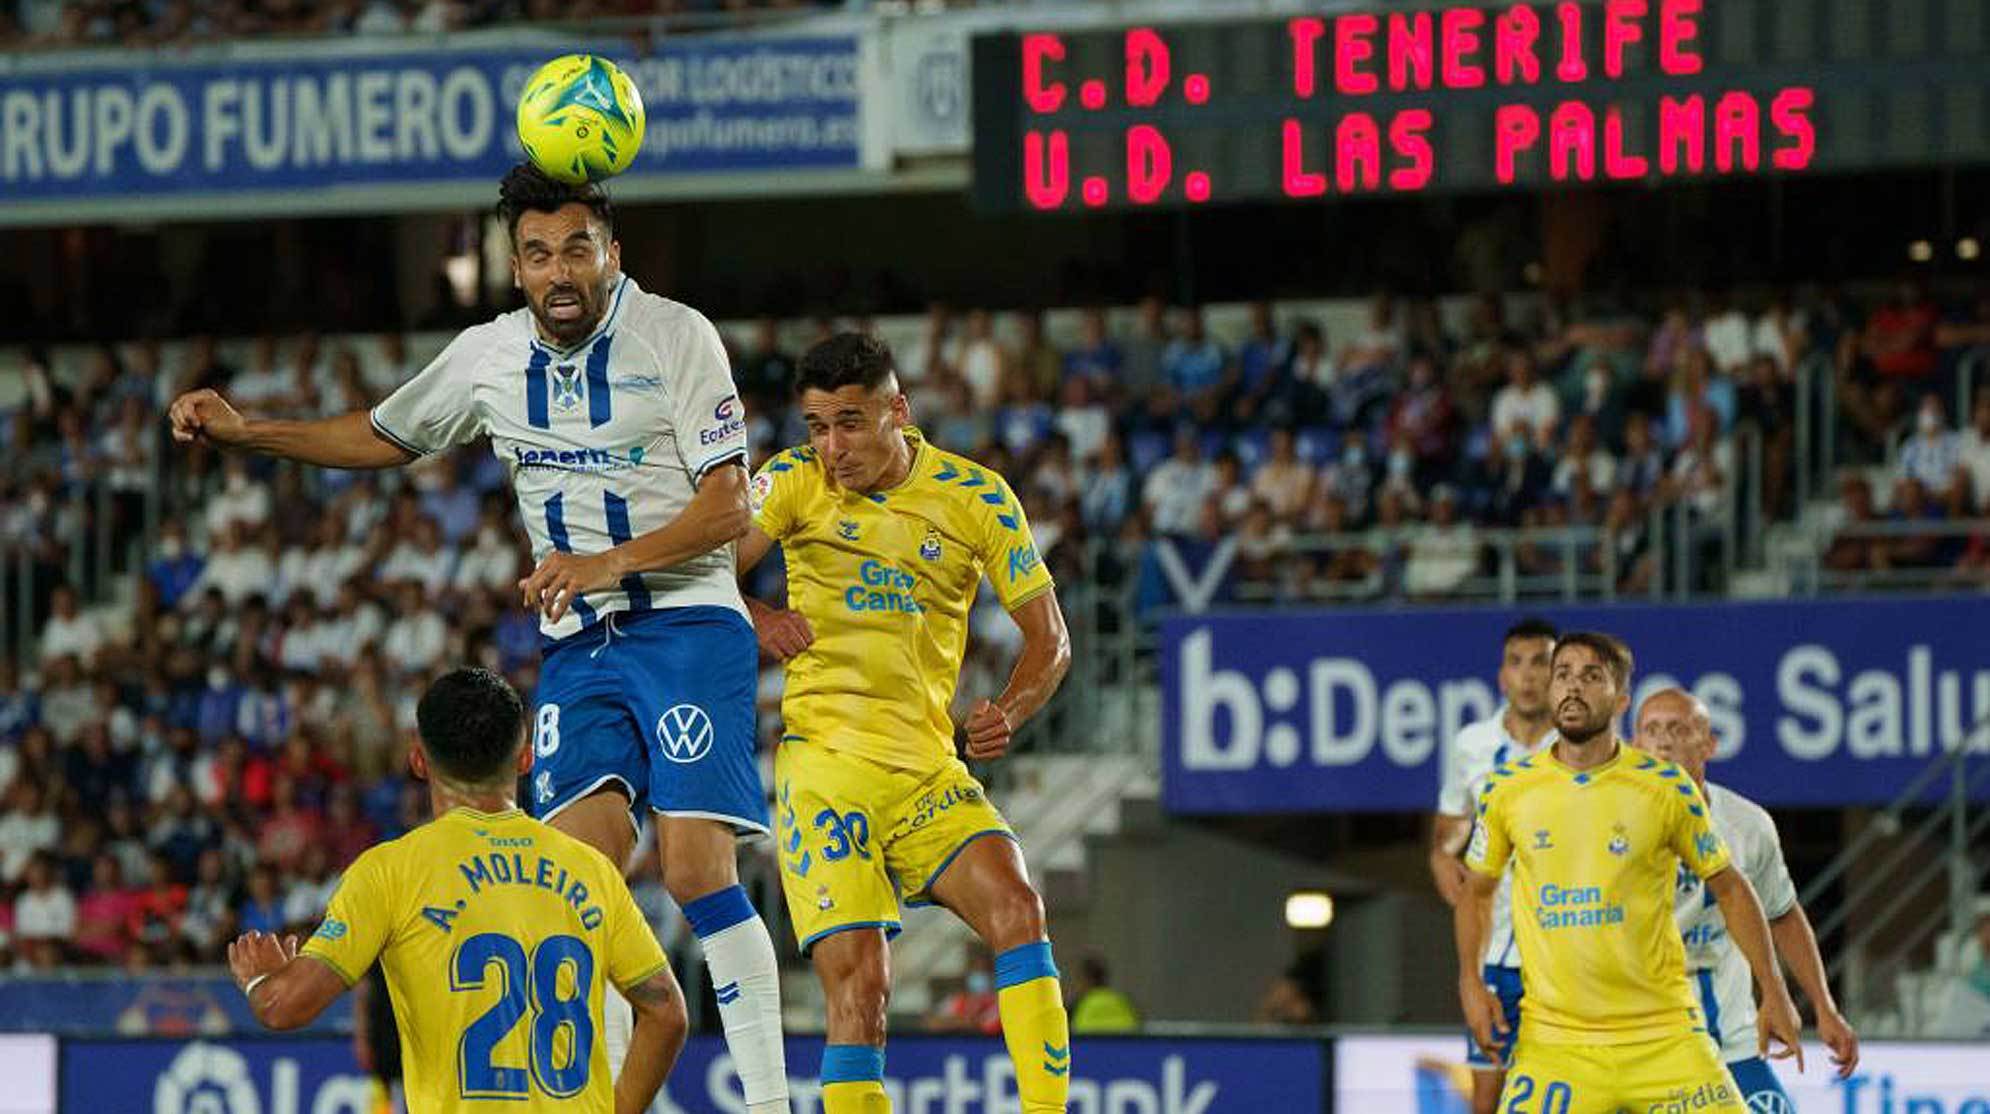 Playoffs' de ascenso | Las Palmas - Tenerife: Derbi canario que vale una  final | Marca